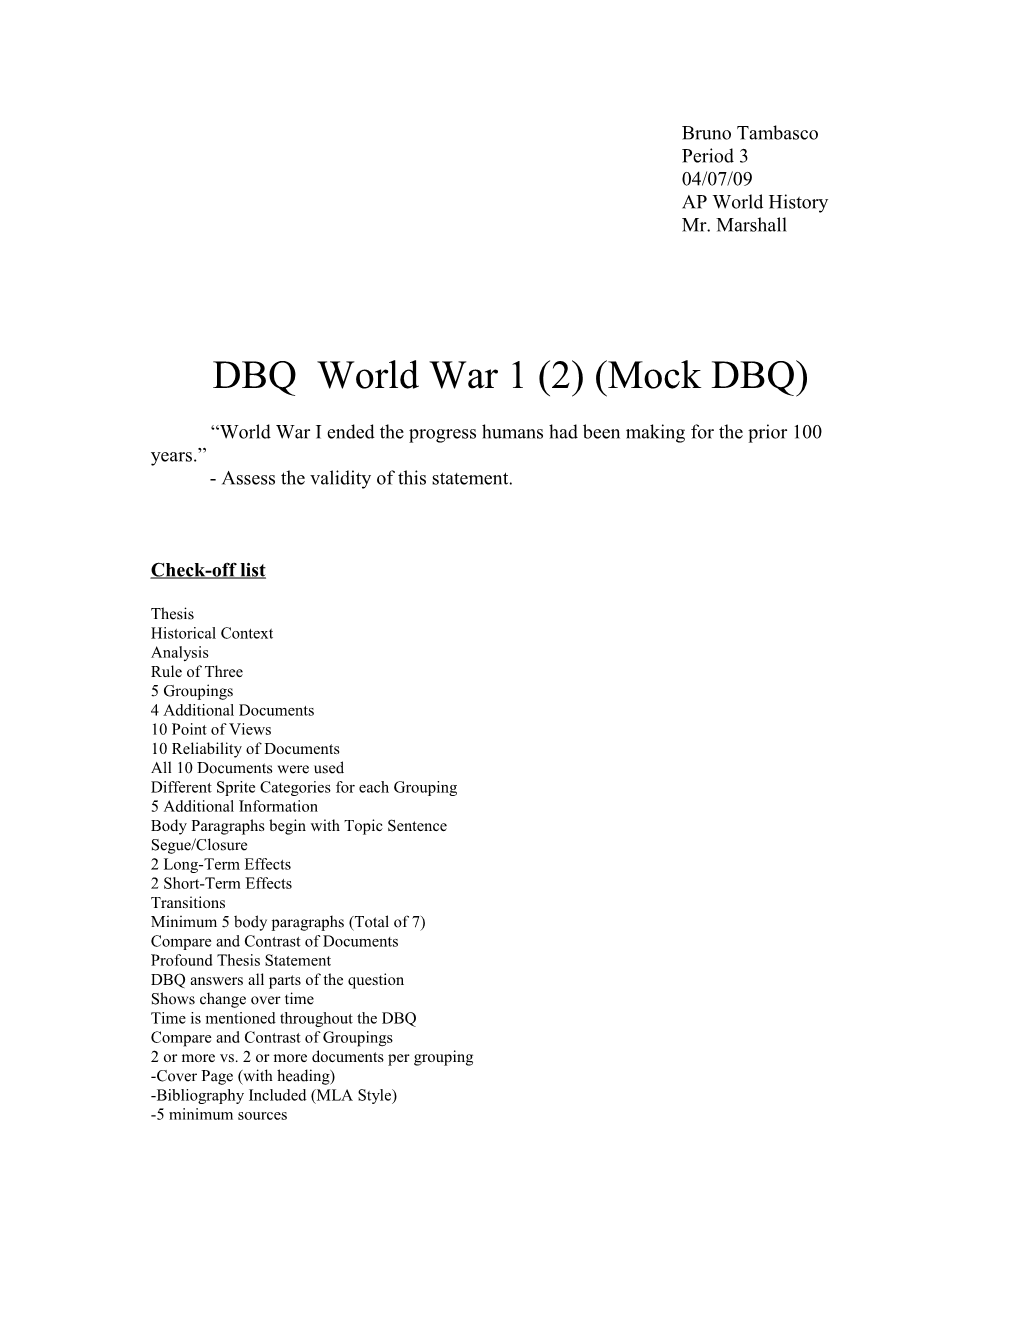 DBQ World War 1 (2) (Mock DBQ)